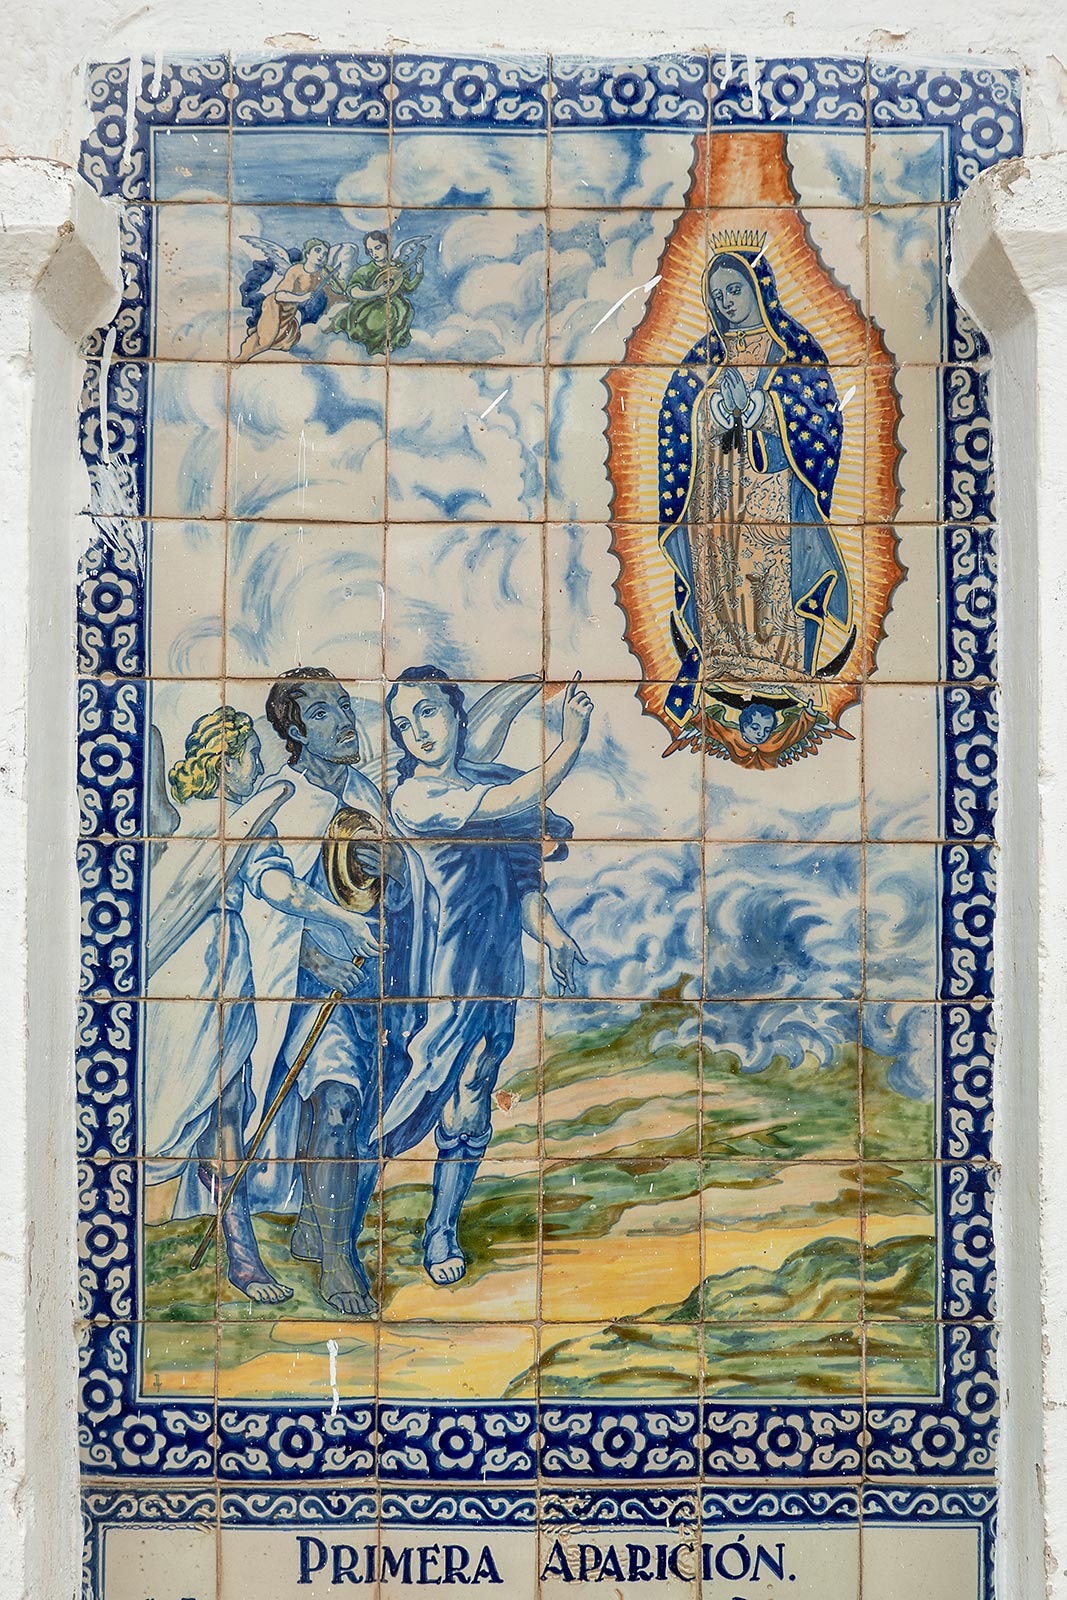 Bild målad på brickor av Jungfru Marias första uppenbarelse till Juan Diego, Santuario del Señor del Sacromonte Amecameca